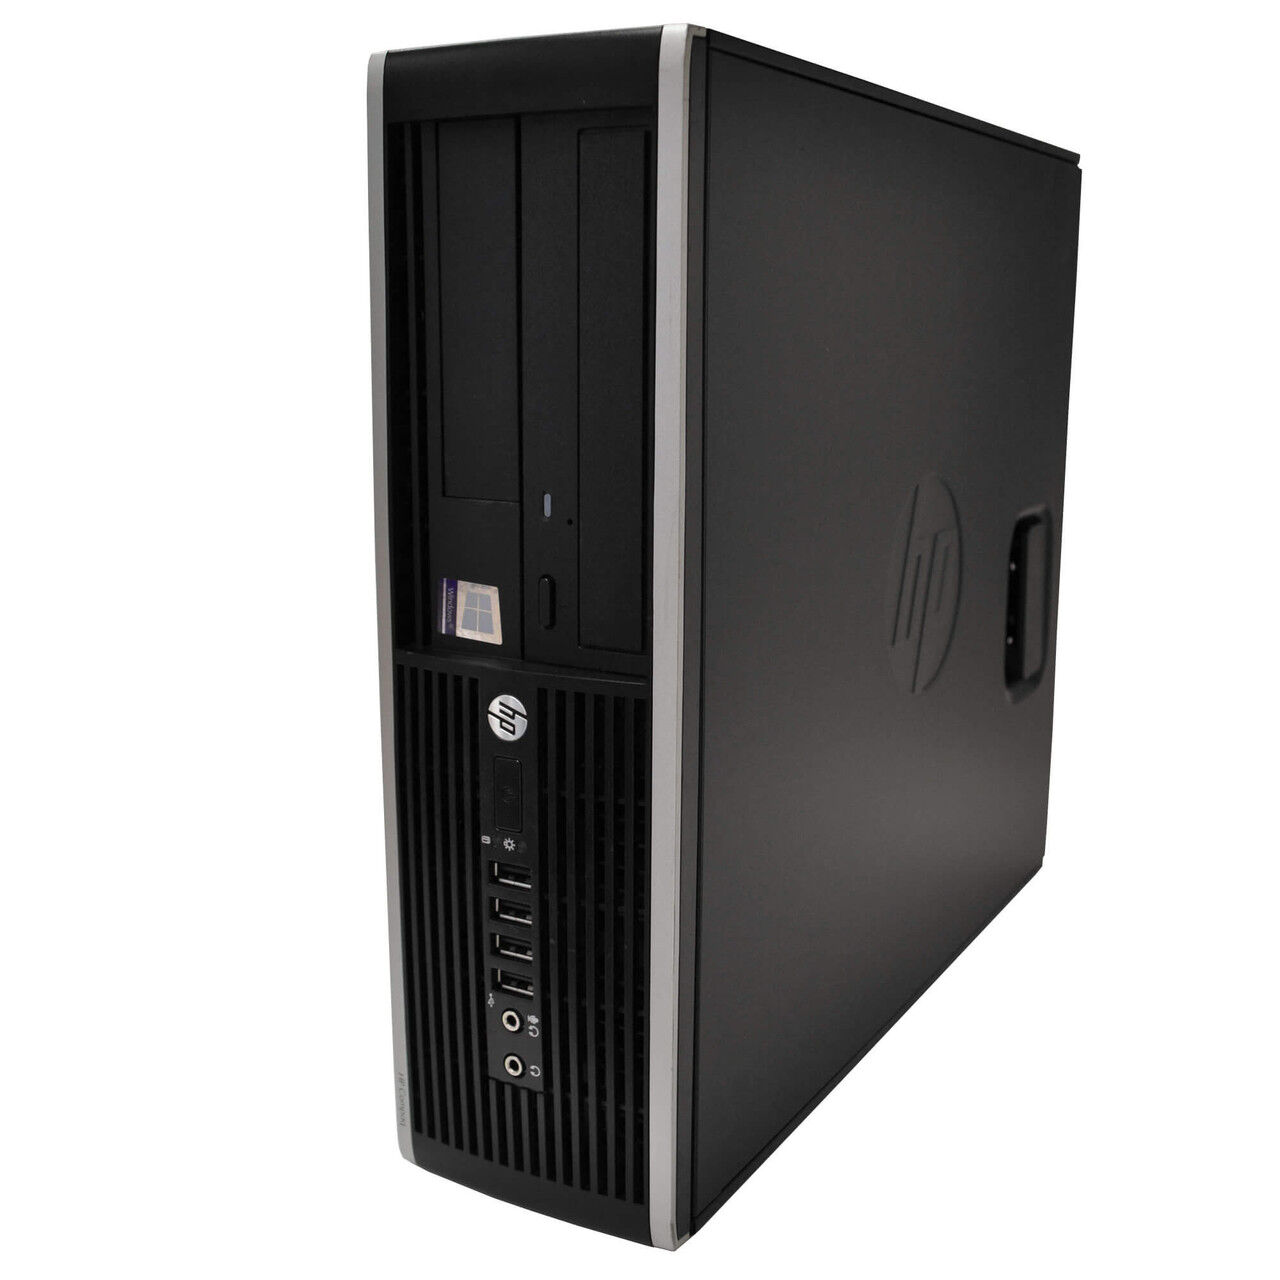 HP 6200 Pro Desktop Computer: Intel Core i7 (2nd Gen), Windows 10, WiFi